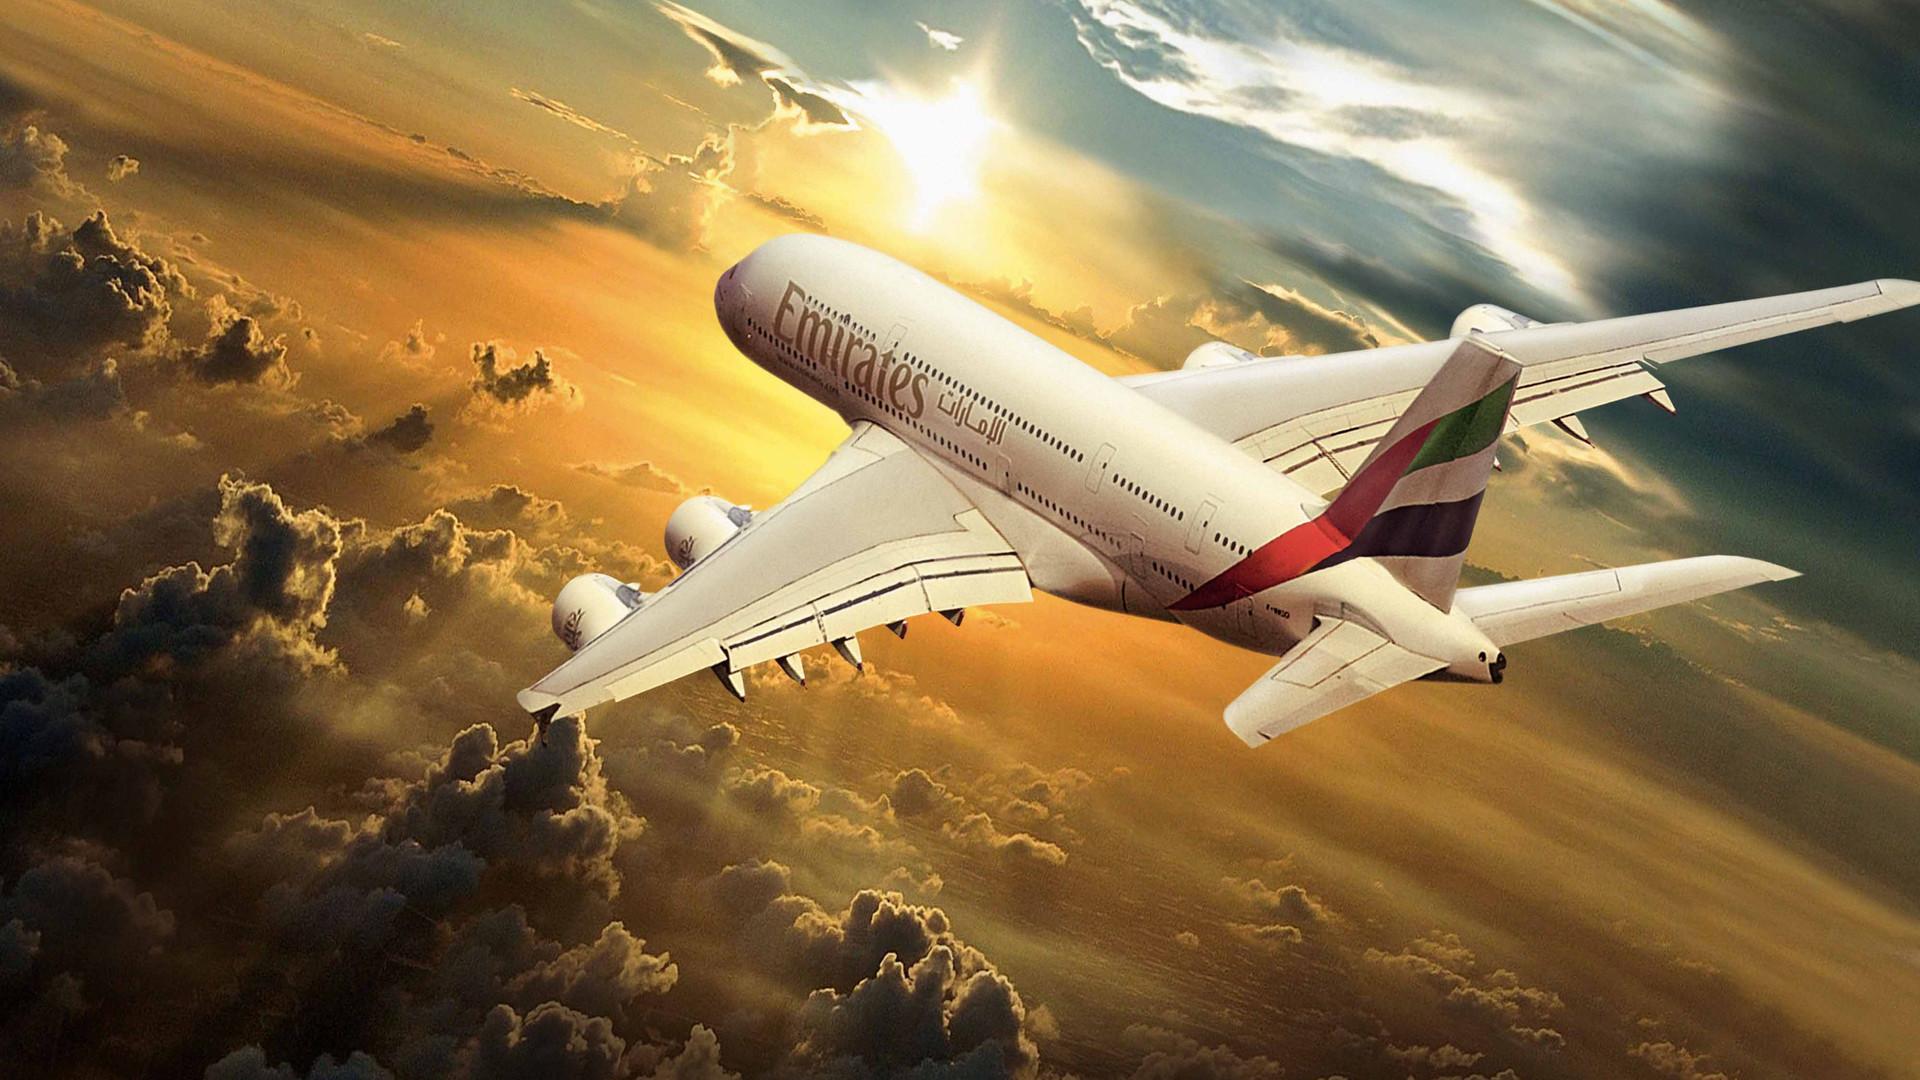 Emirates Flight Ek 241